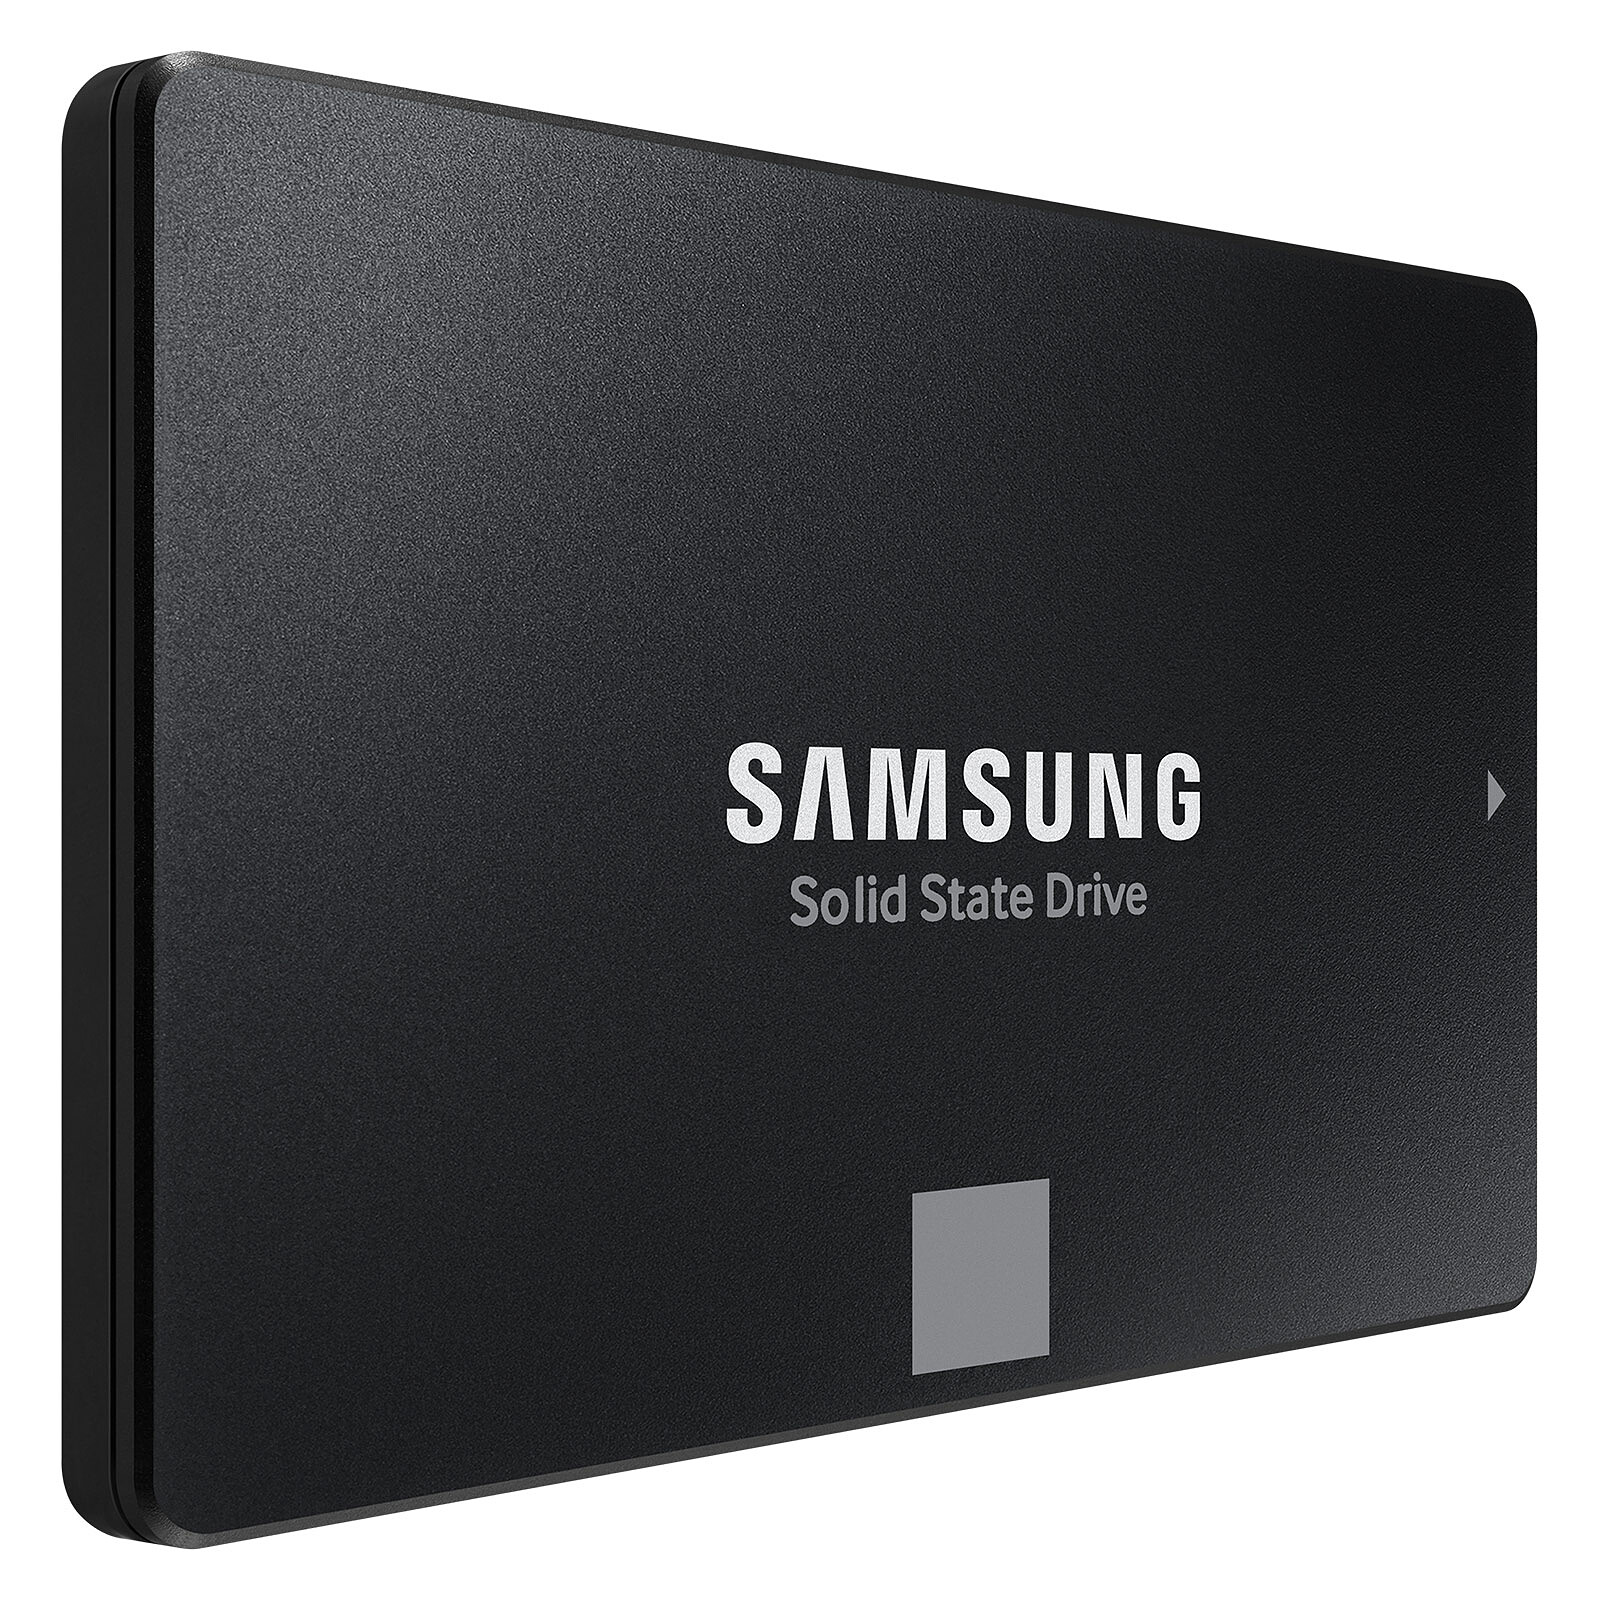 Carte mémoire SSD interne 32 Go pour PC / ordinateur portable - Solid State  Drive